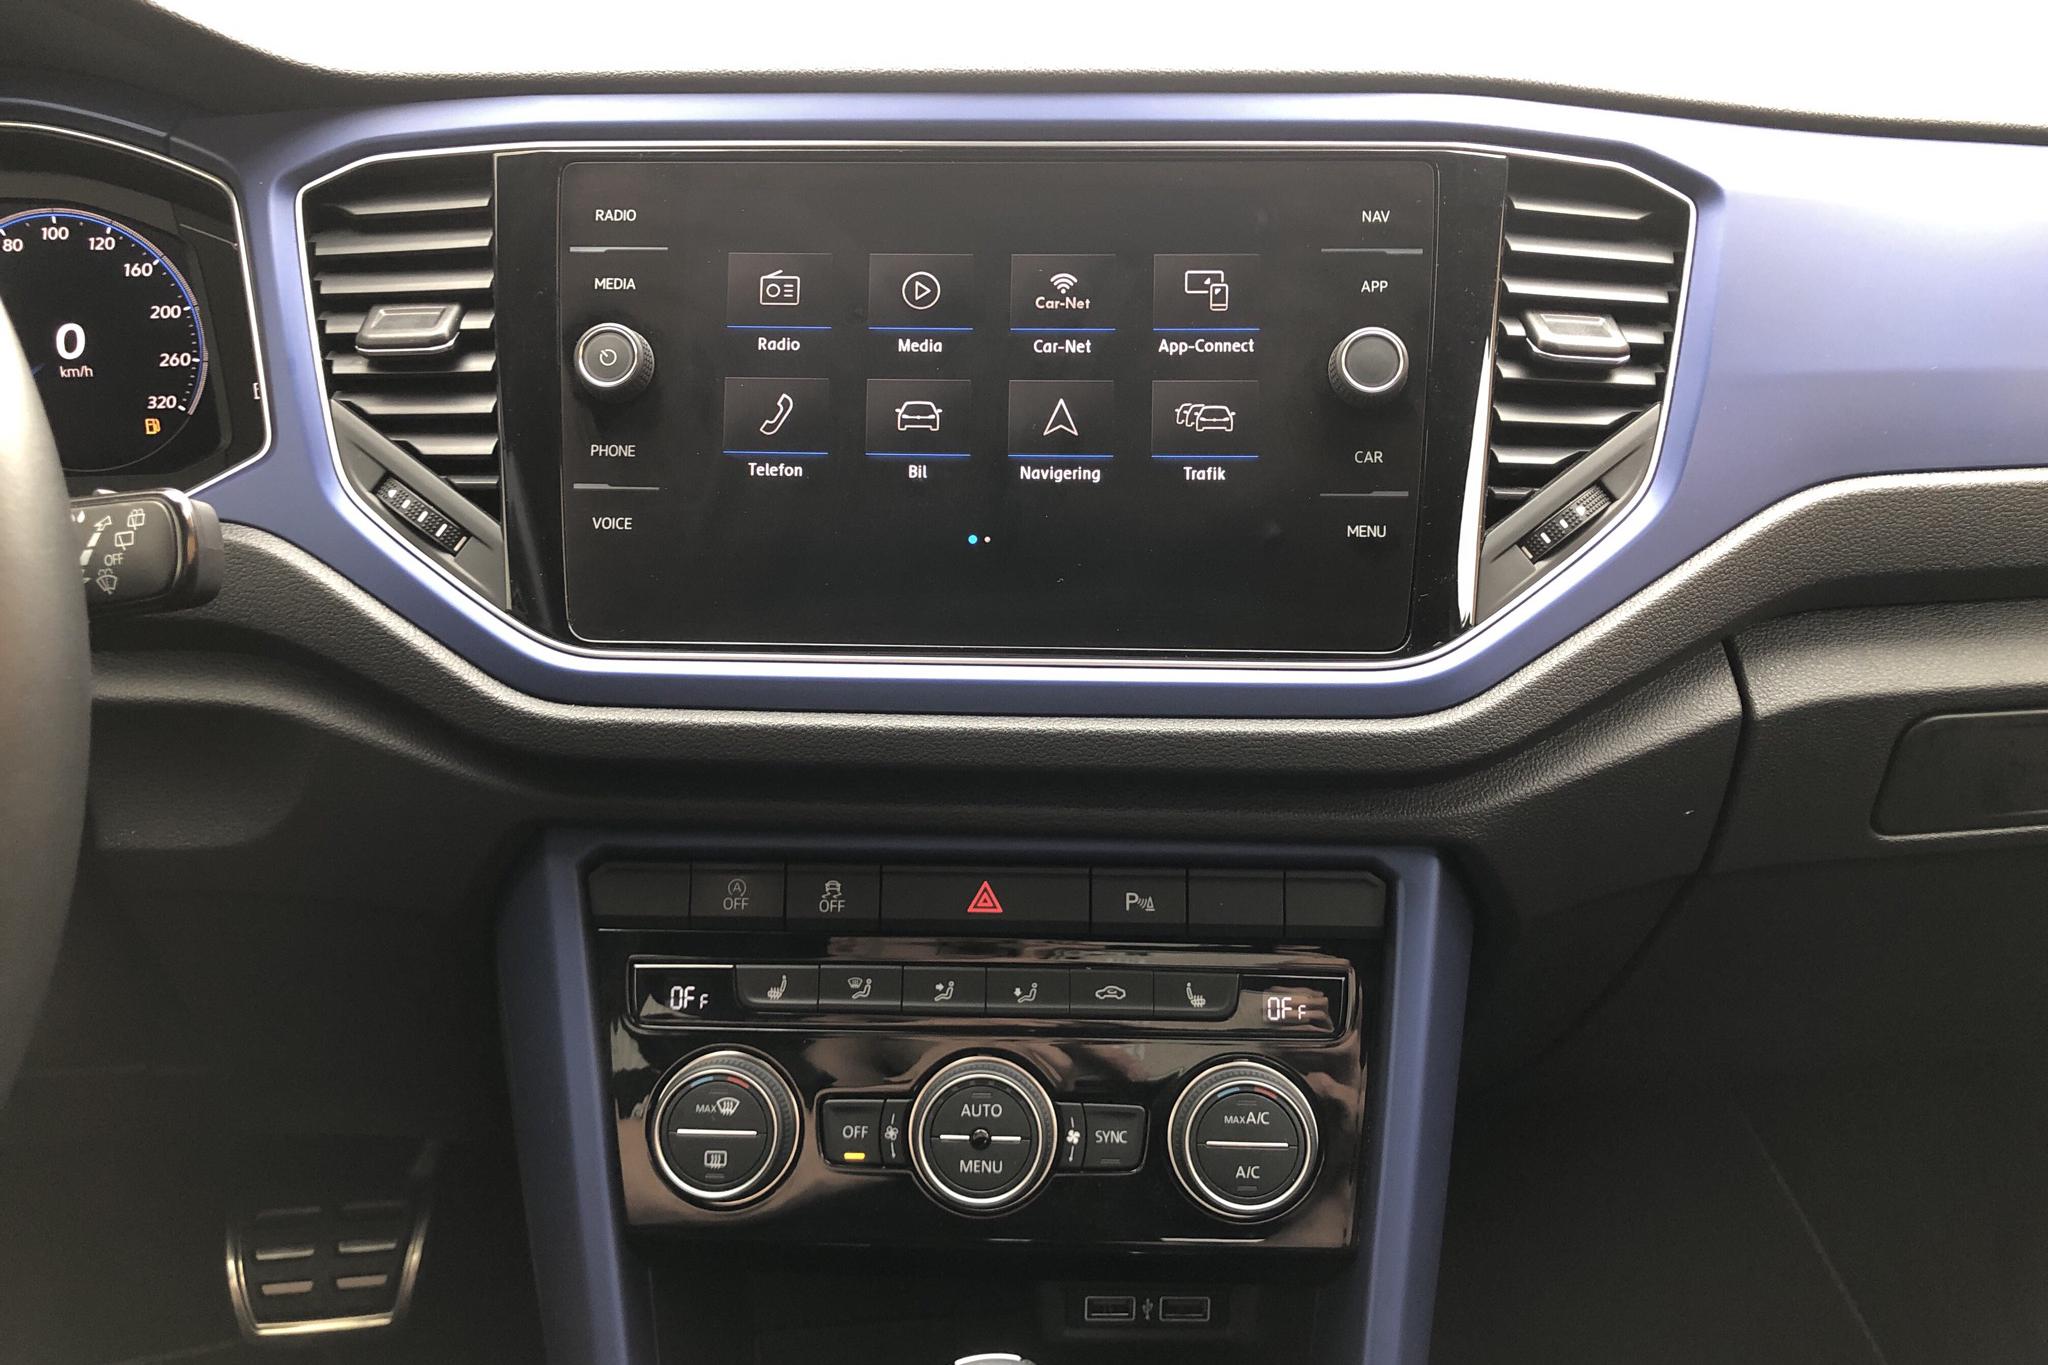 VW T-Roc R 4MOTION (300hk) - 27 000 km - Automatic - blue - 2020